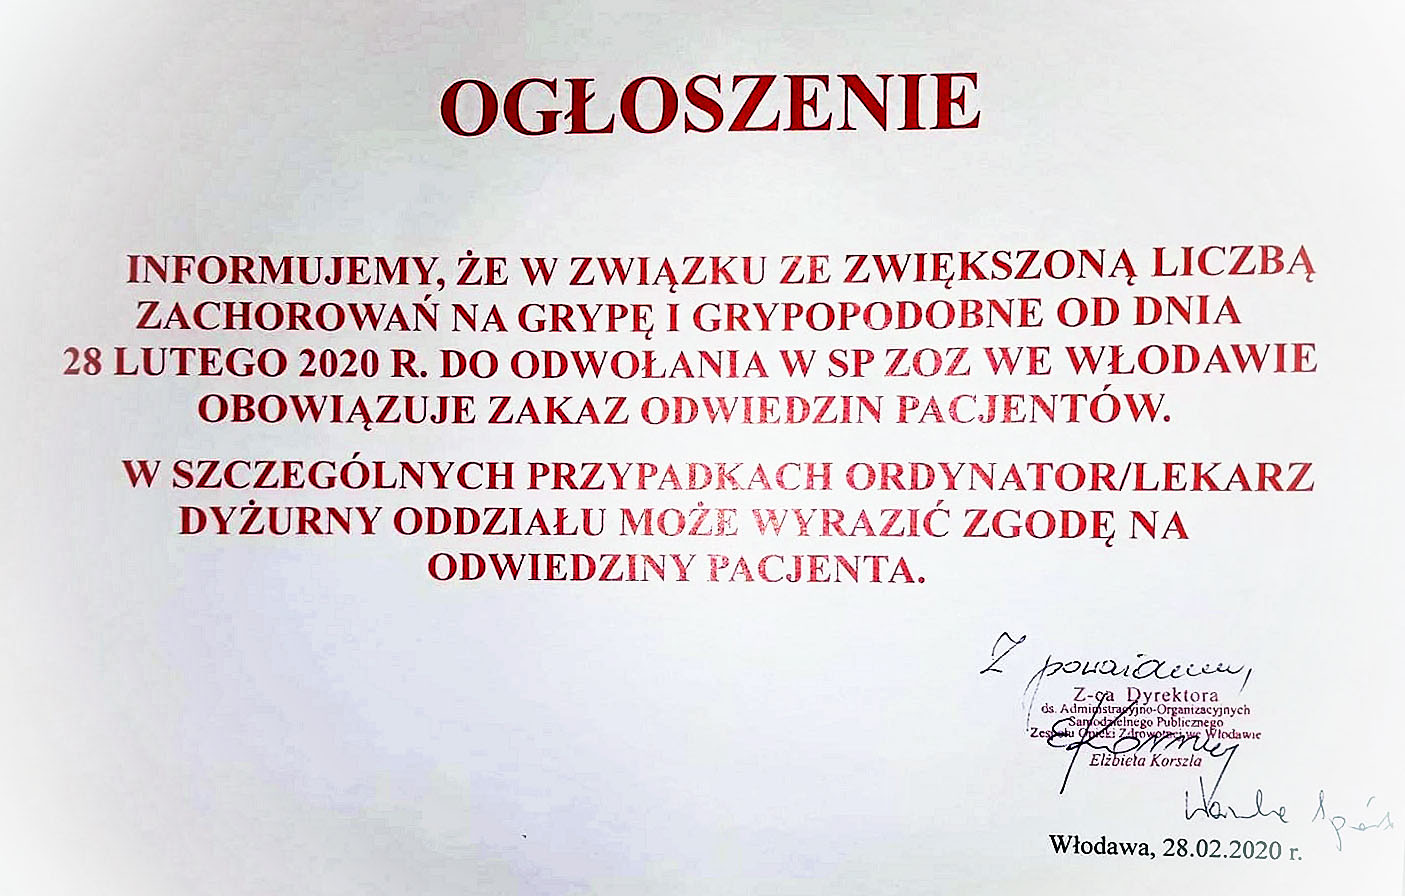 Ogłoszenie o zakazie odwiedzin pacjentów w SPZOZ we Włodawie